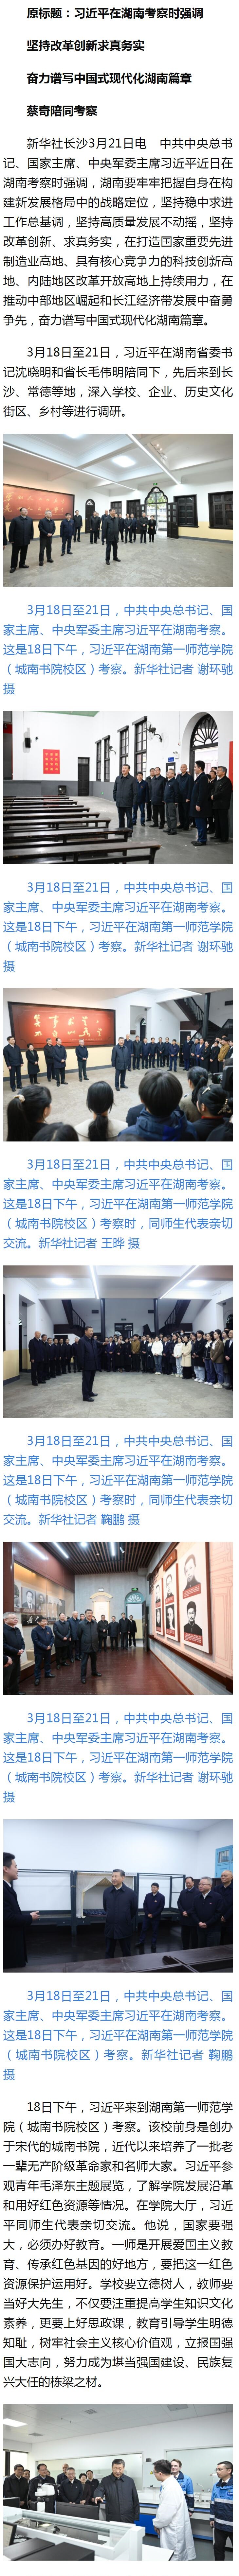 习近平在湖南考察时强调 坚持改革创新求真务实 奋力谱写中国式现代化湖南篇章